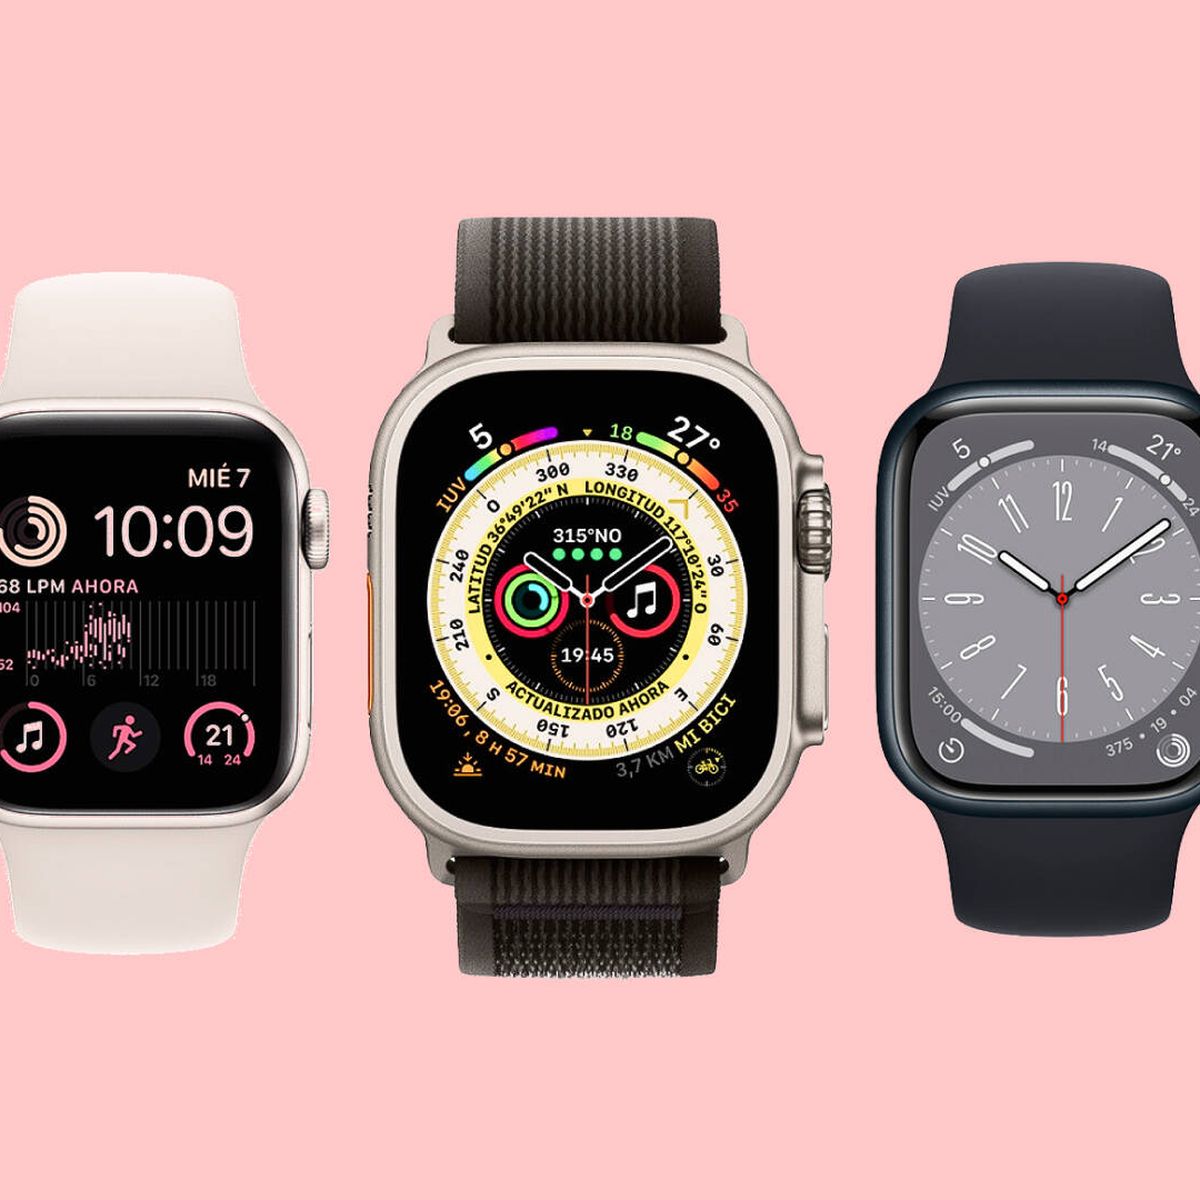 He probado todos Apple Watch para decidir cuál regalar: elegir ha sido que nunca